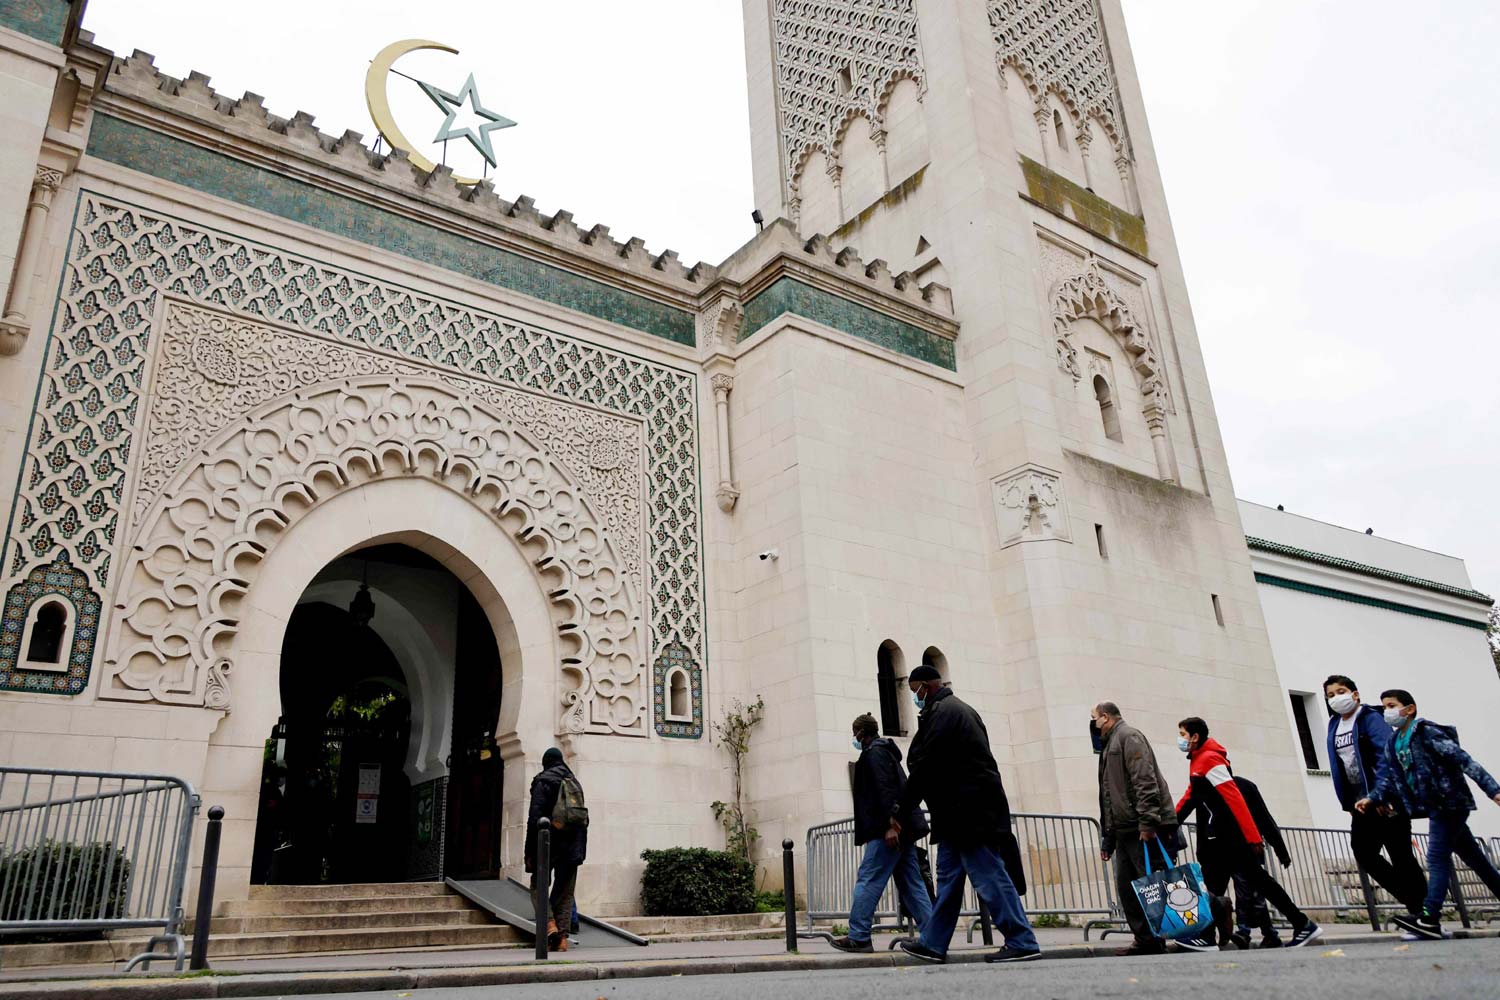 عندما يمول النظام العسكري الجزائري بسخاء مسجد باريس لأغراض سياسية!